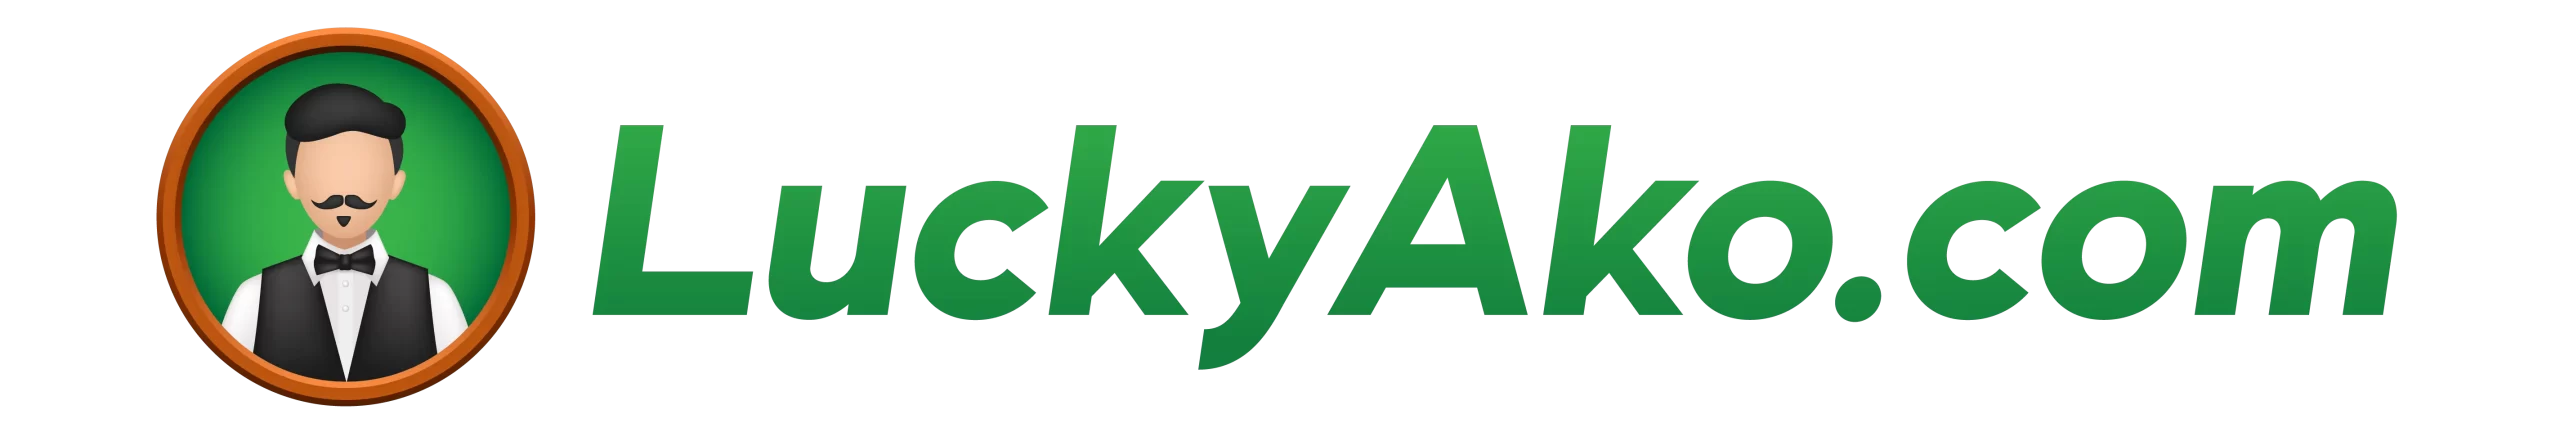 luckyako.com logo